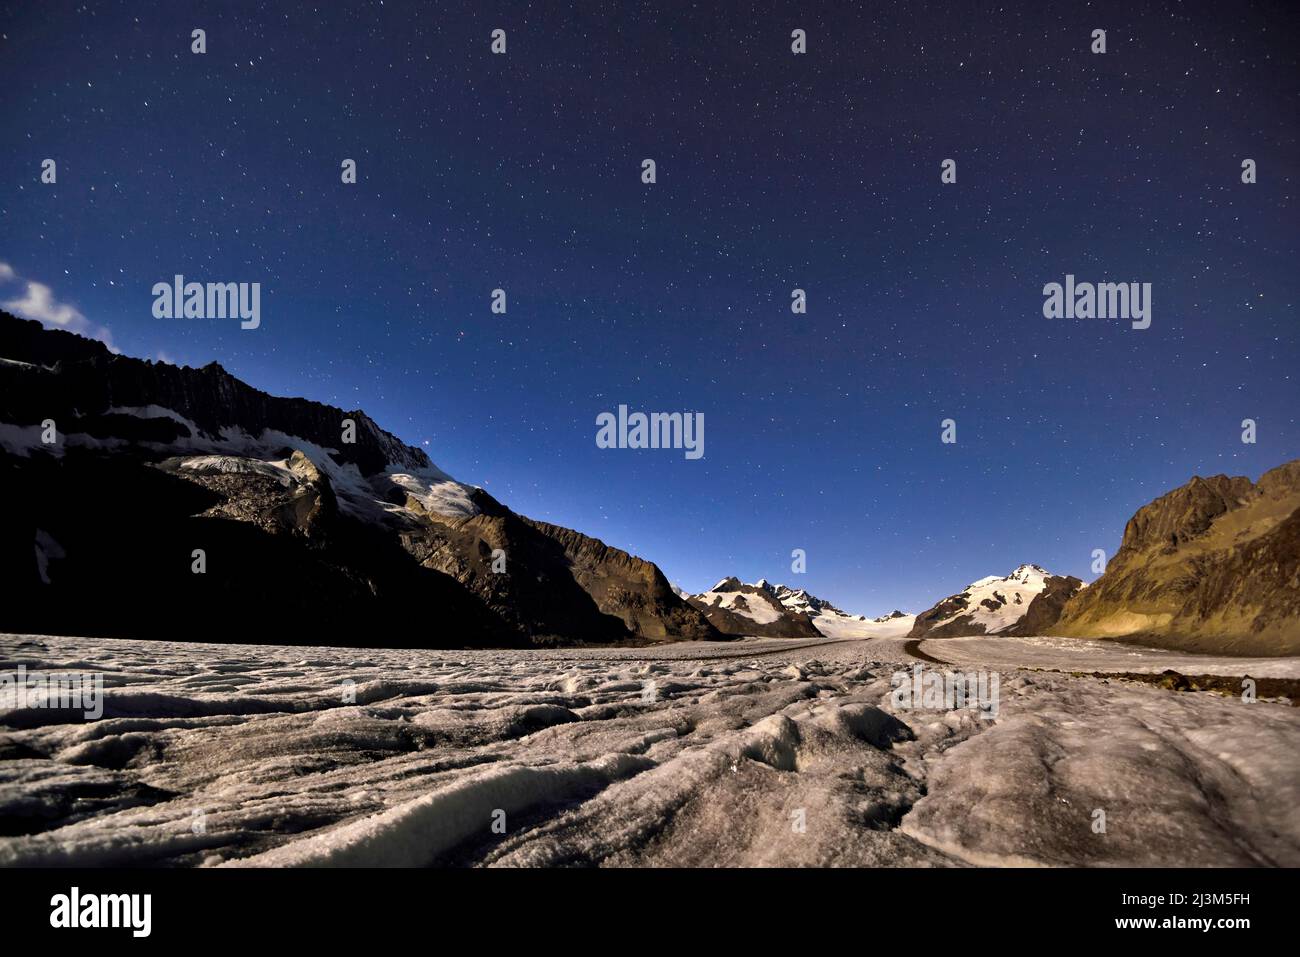 Paysage sauvage sur le glacier d'Aletsch la nuit.; glacier d'Aletsch, Fiesch, Suisse. Banque D'Images